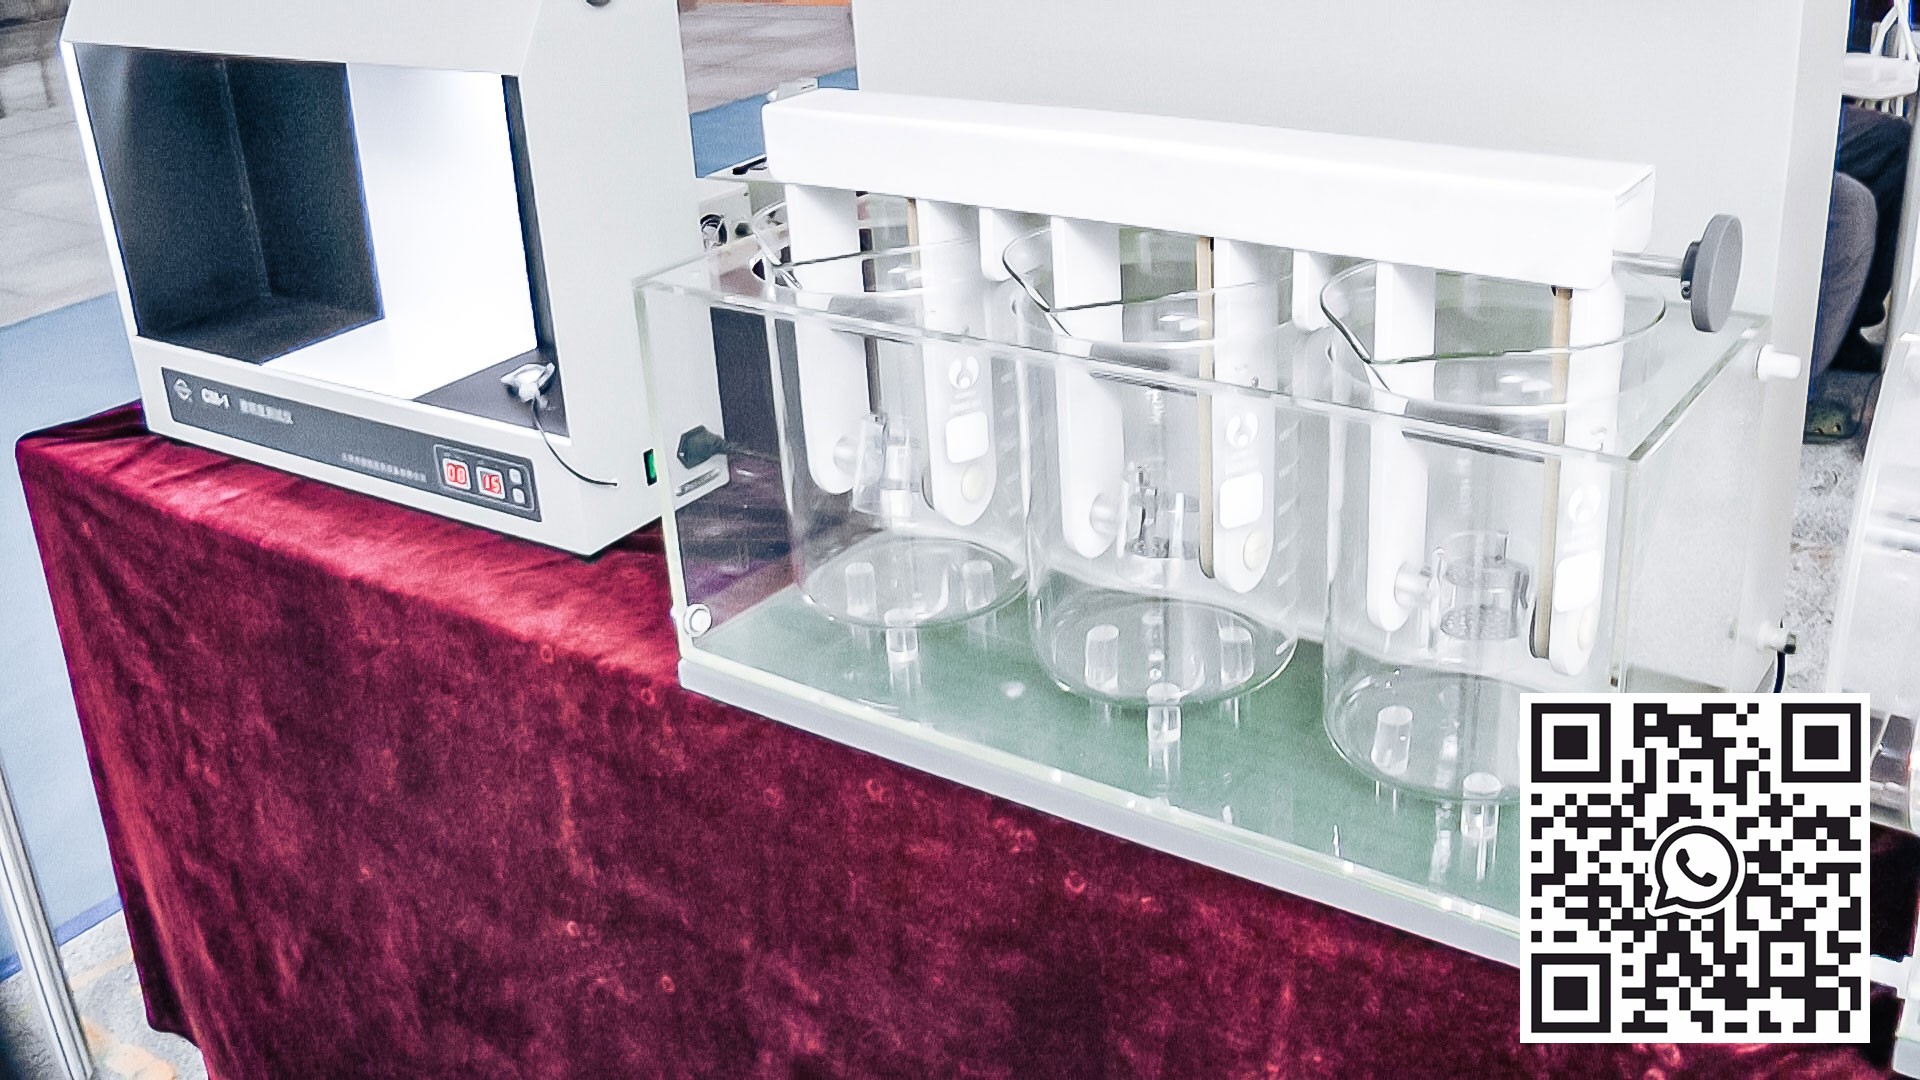 Automatisk utstyr for kvalitetstesting av tabletter og kapsler i farmasøytisk produksjon Østerrike